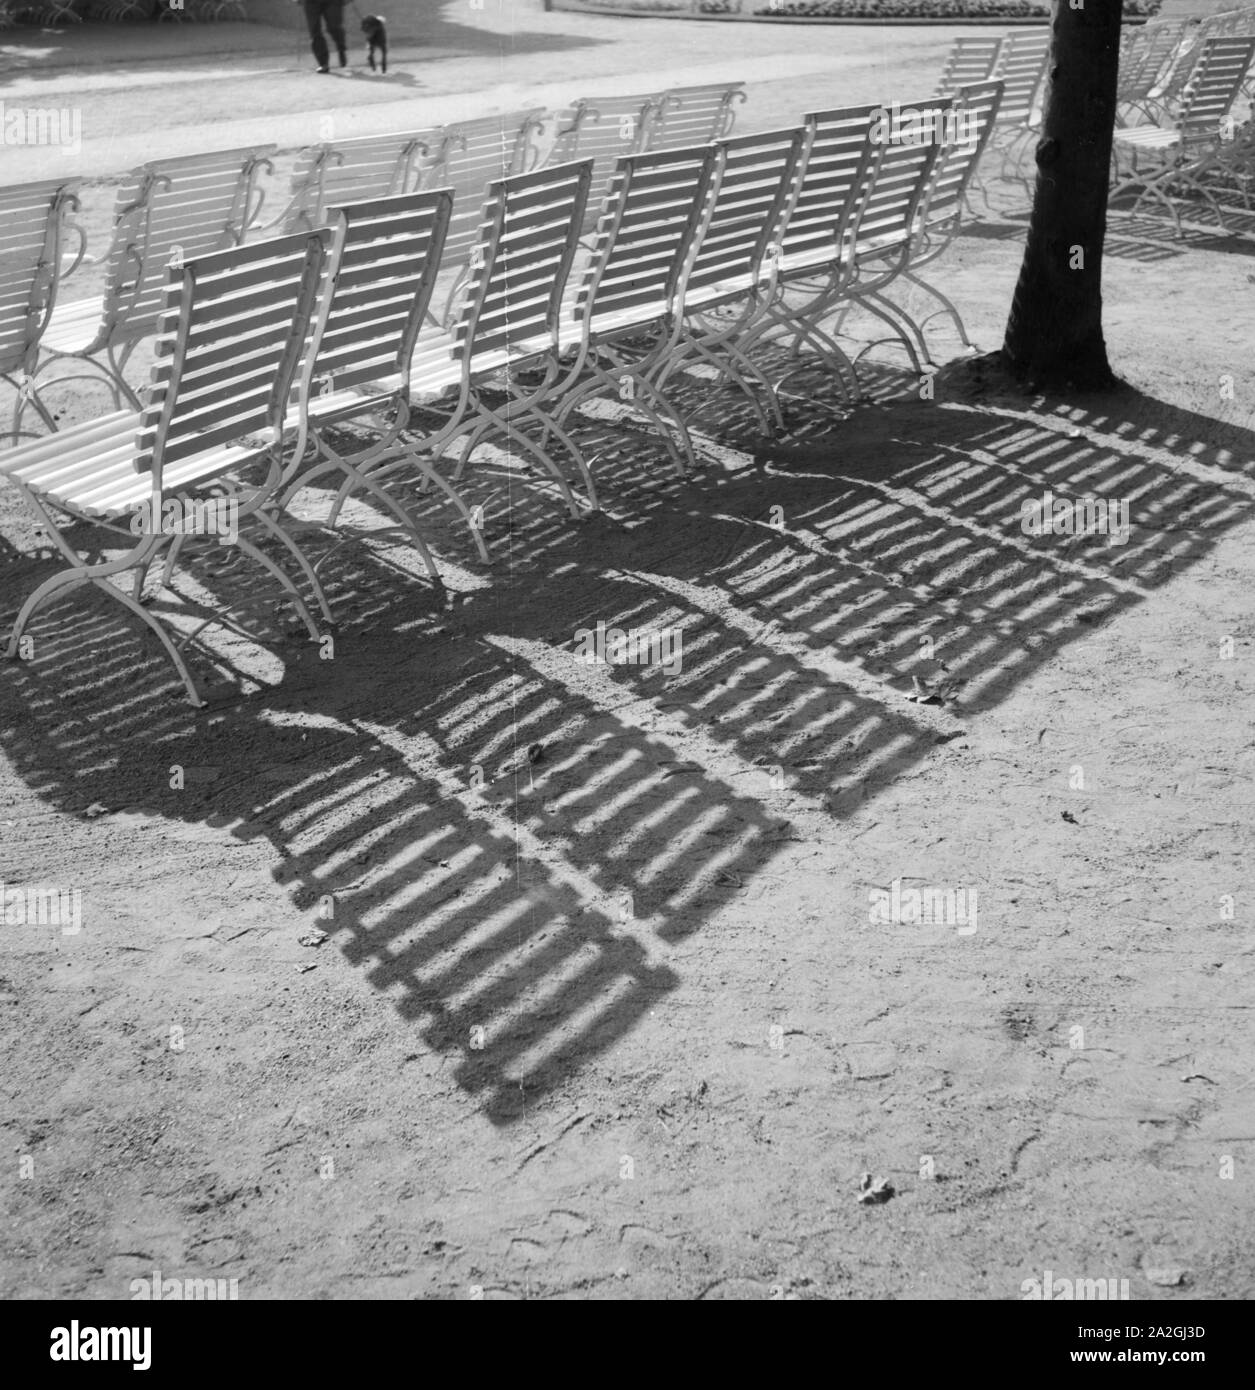 Stühle werfen ihren Schatten in der Sonne di Bad Salzuflen, Deutschland 1930er Jahre. Sedie e la loro ombra nel sole a Bad Salzuflen i giardini del centro termale, Germania 1930s. Foto Stock